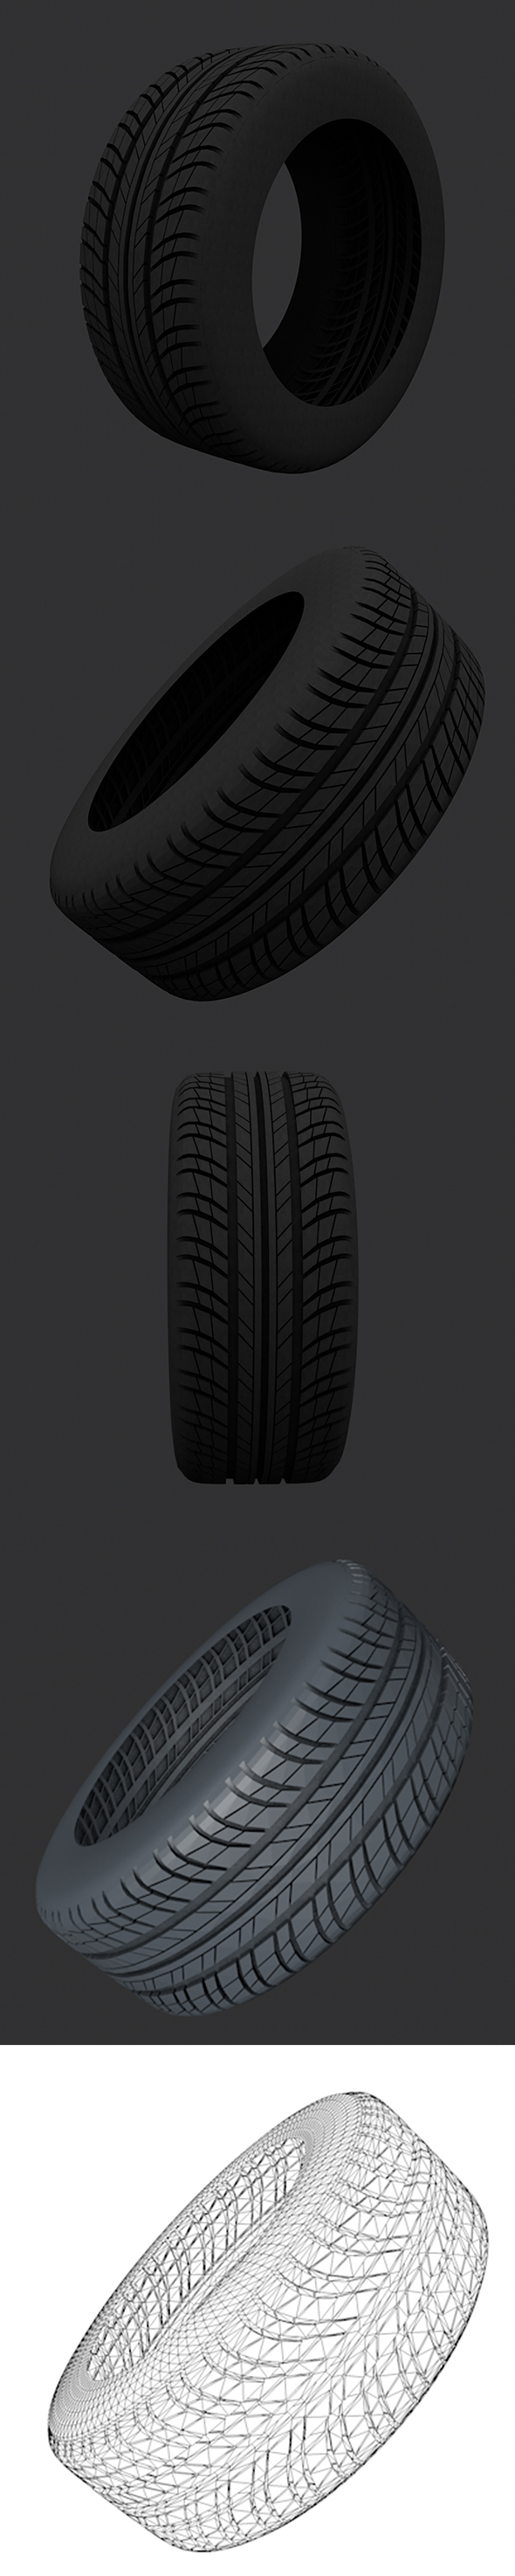 Tire 3D Models - 3Docean 21442135